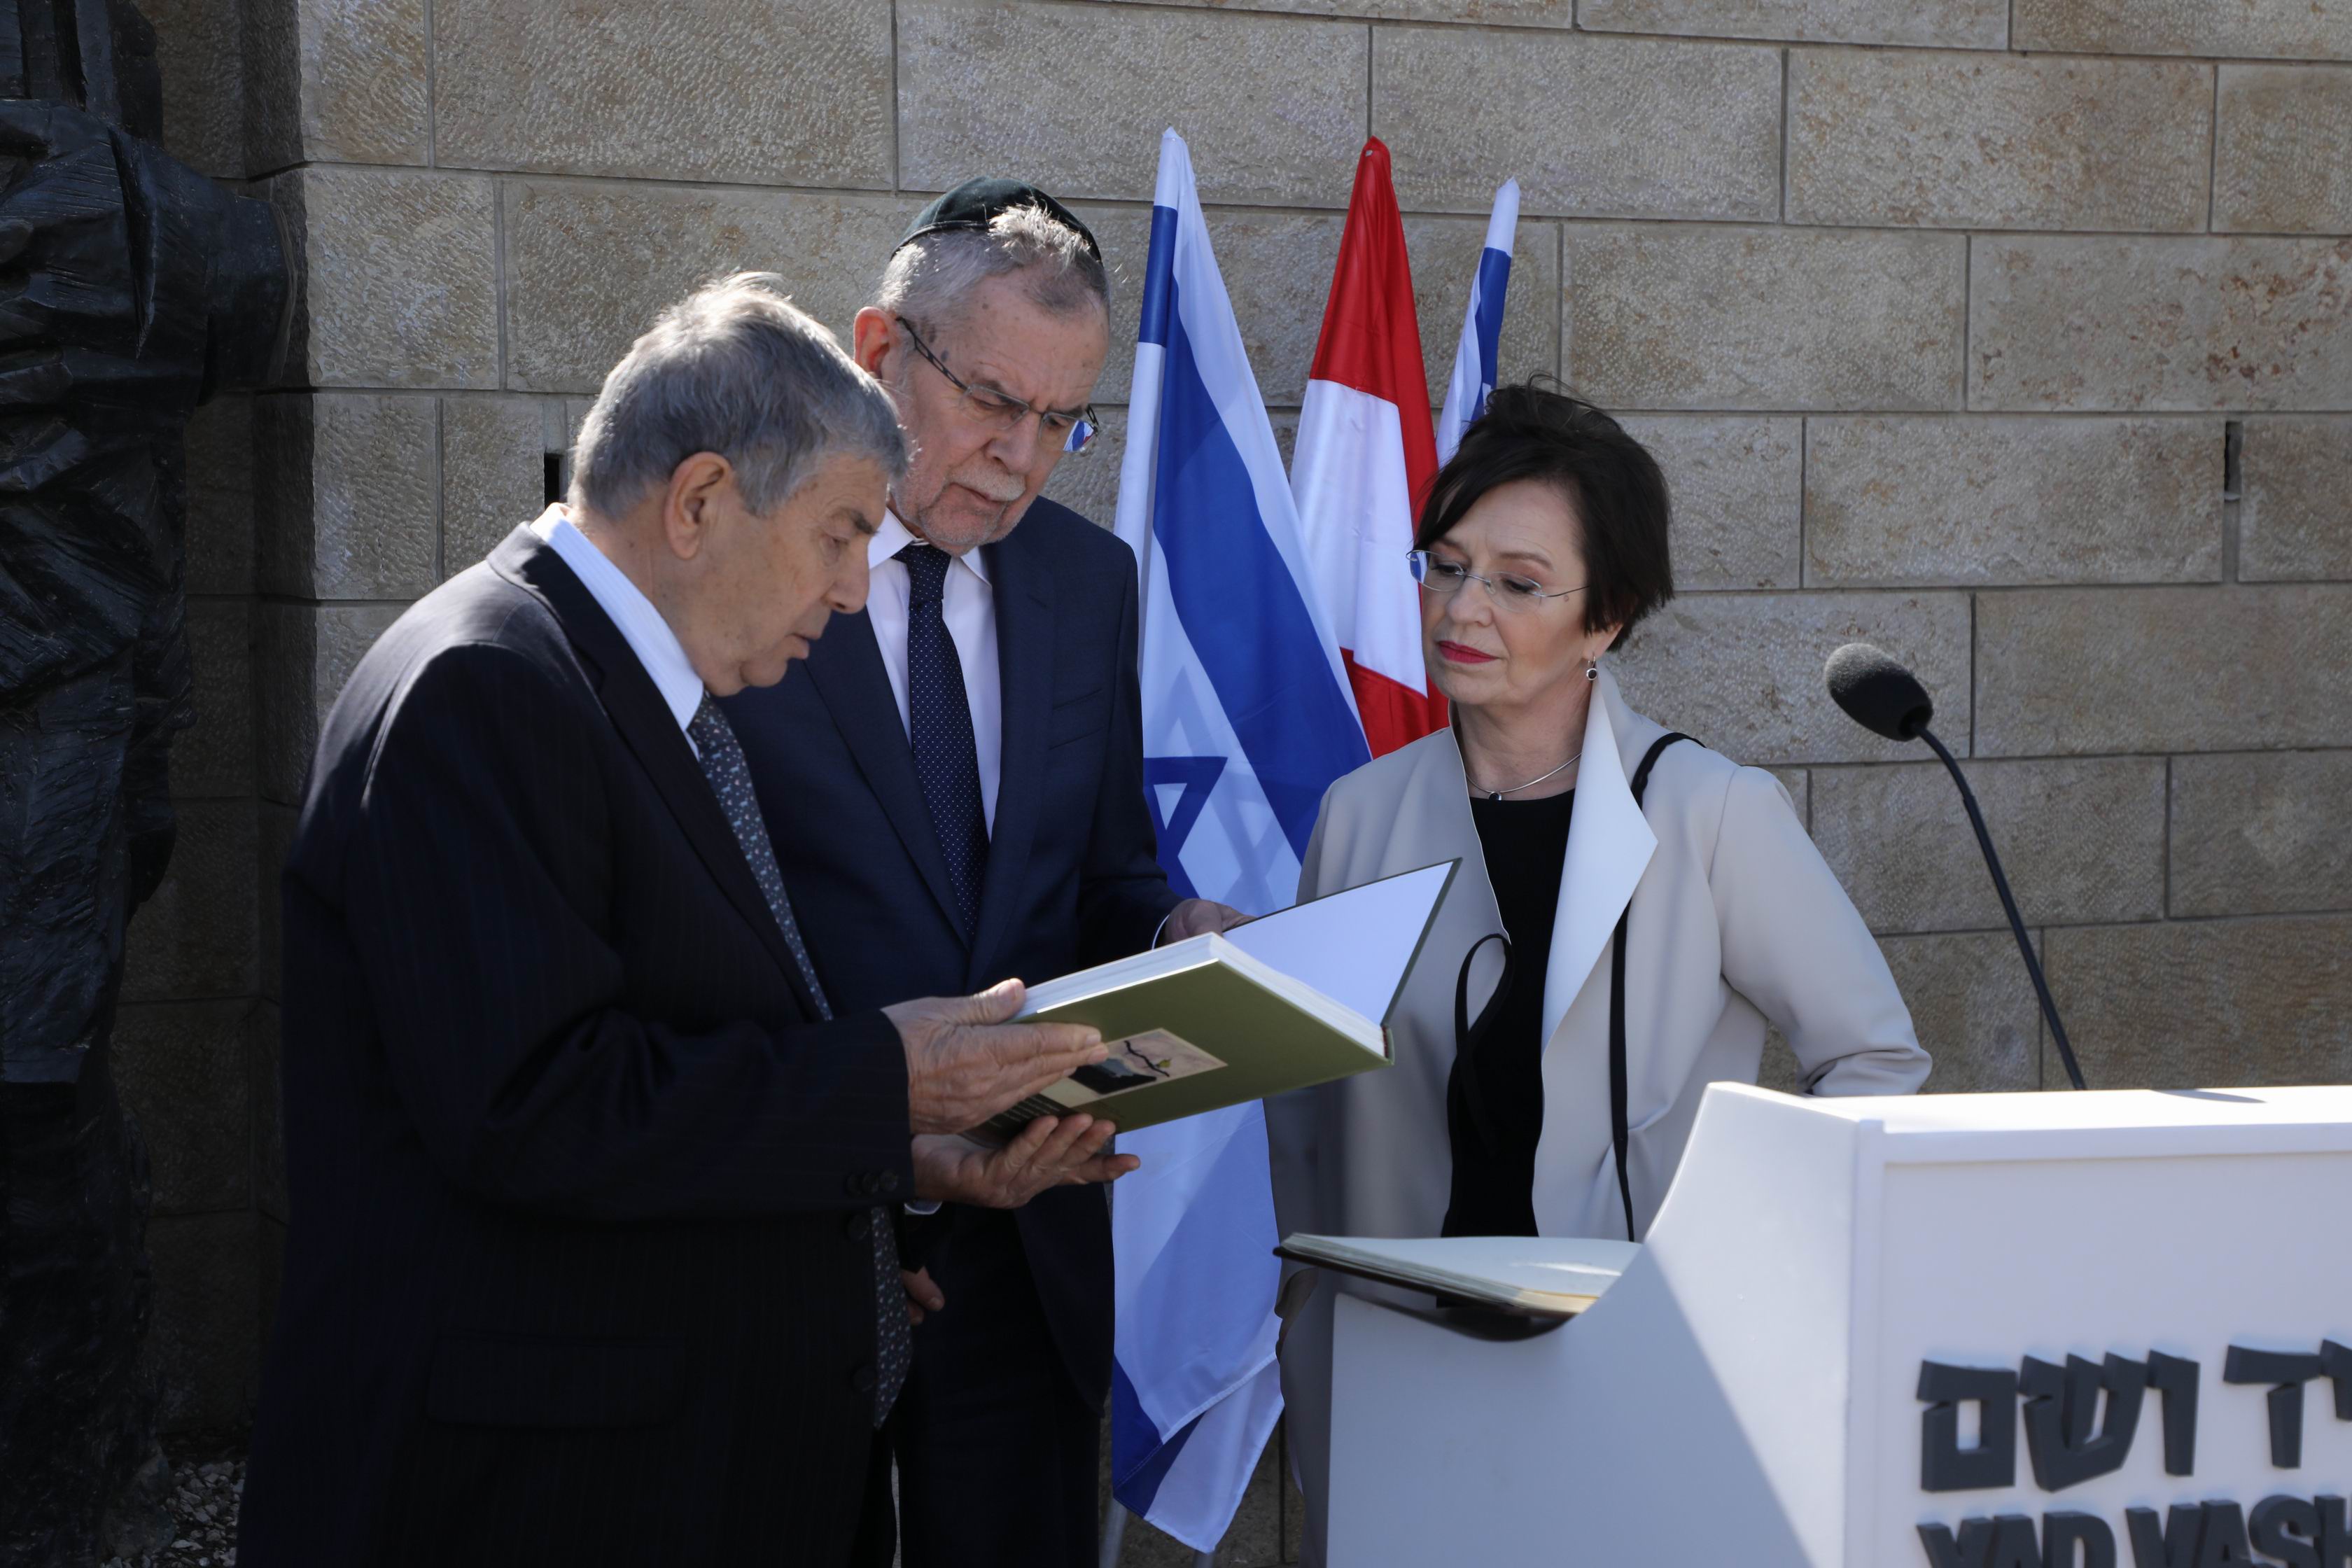 Yad Vashem Chairman Avner Shalev presented the Austrian President with the Yad Vashem Album "To Bear Witness"